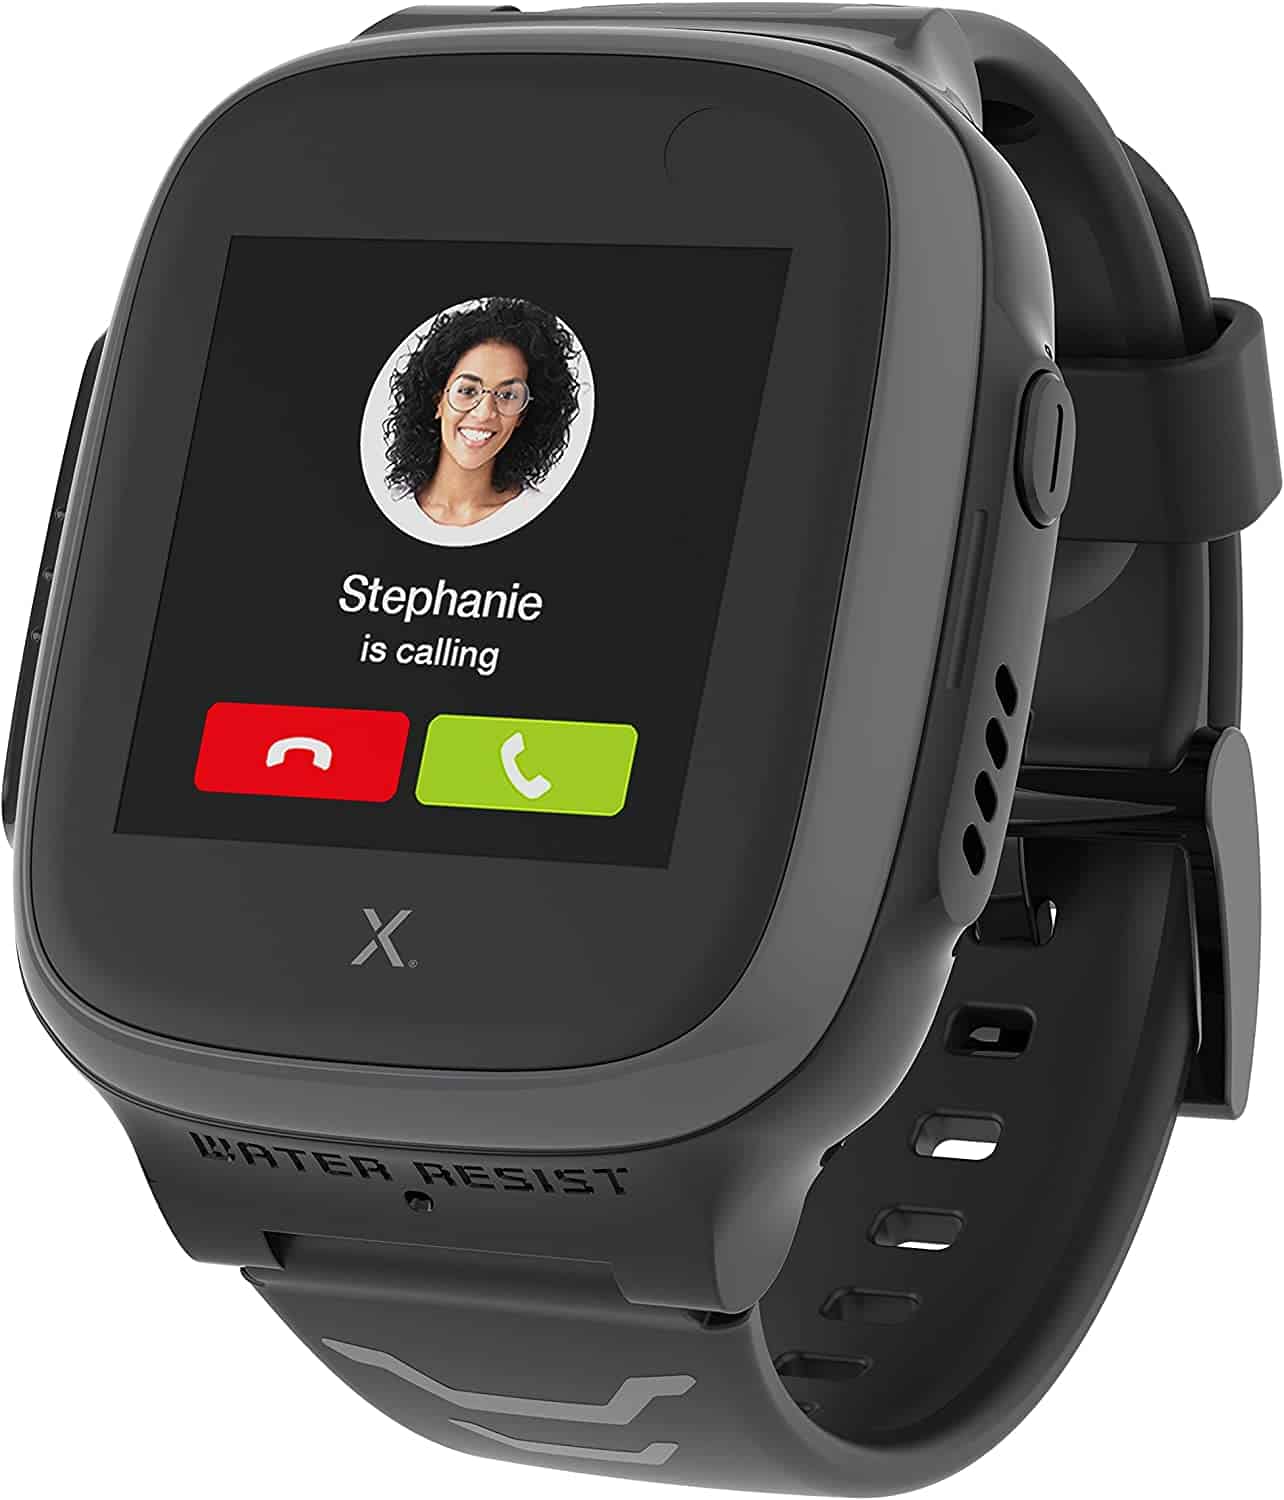 Best Kids Smartwatch with GPS- Xplora X5 Play